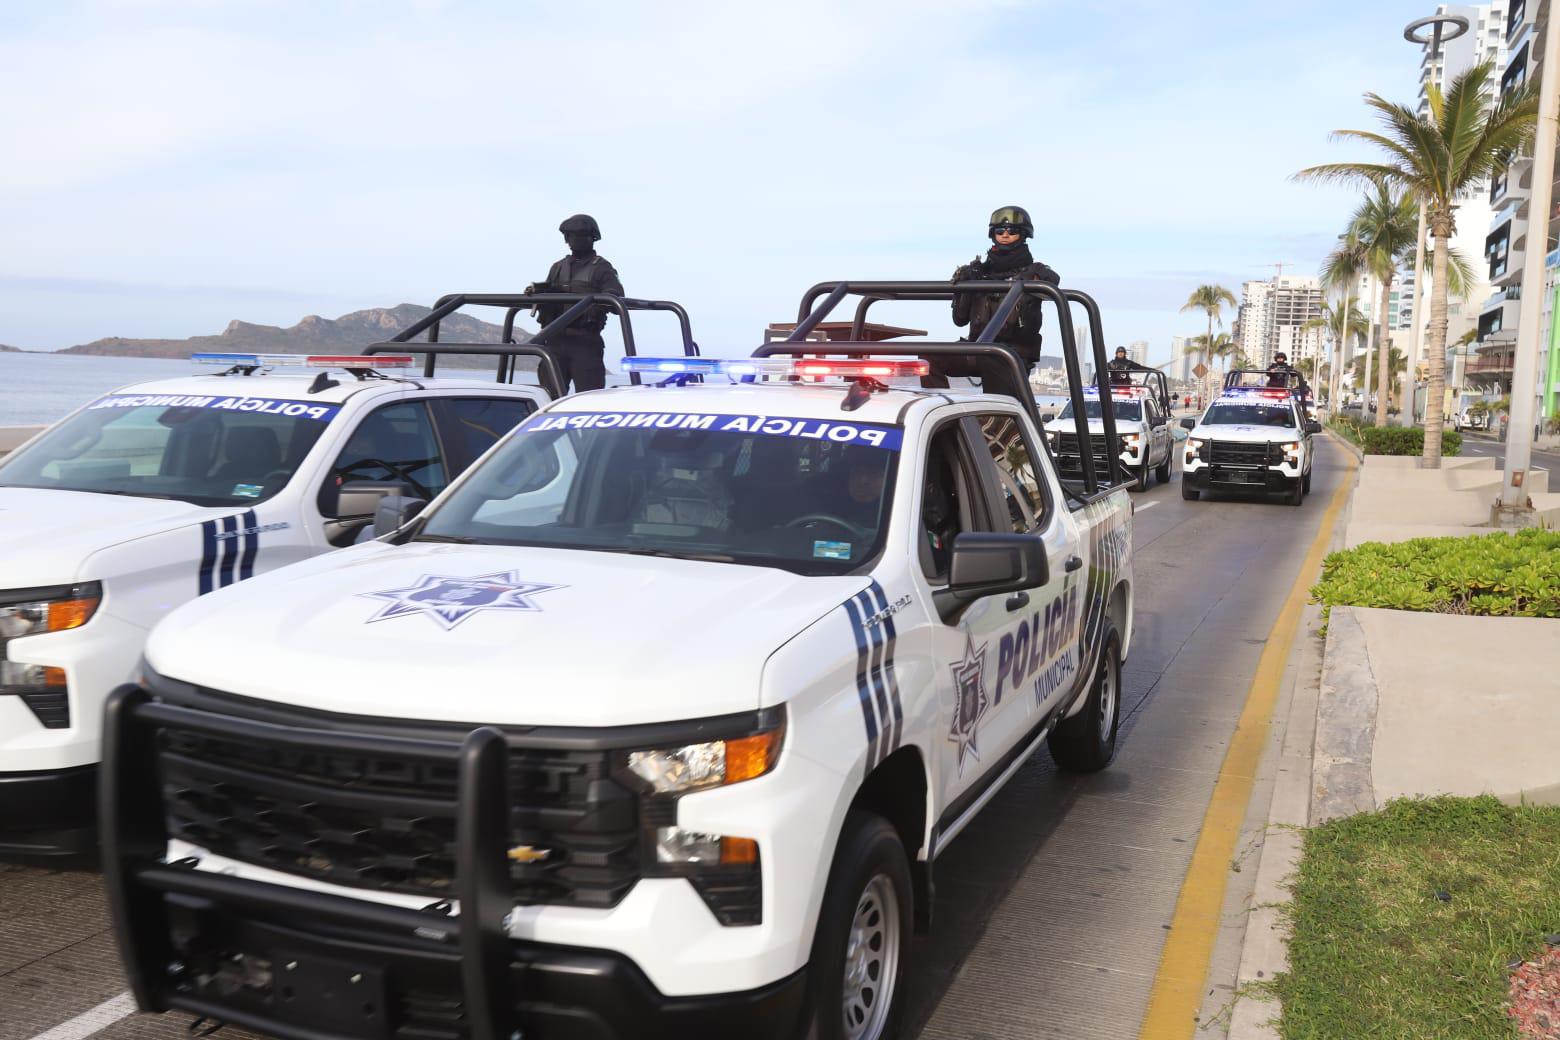 $!Tras tener periodo vacacional trágico, Mazatlán estrena patrullas y uniformes para policías